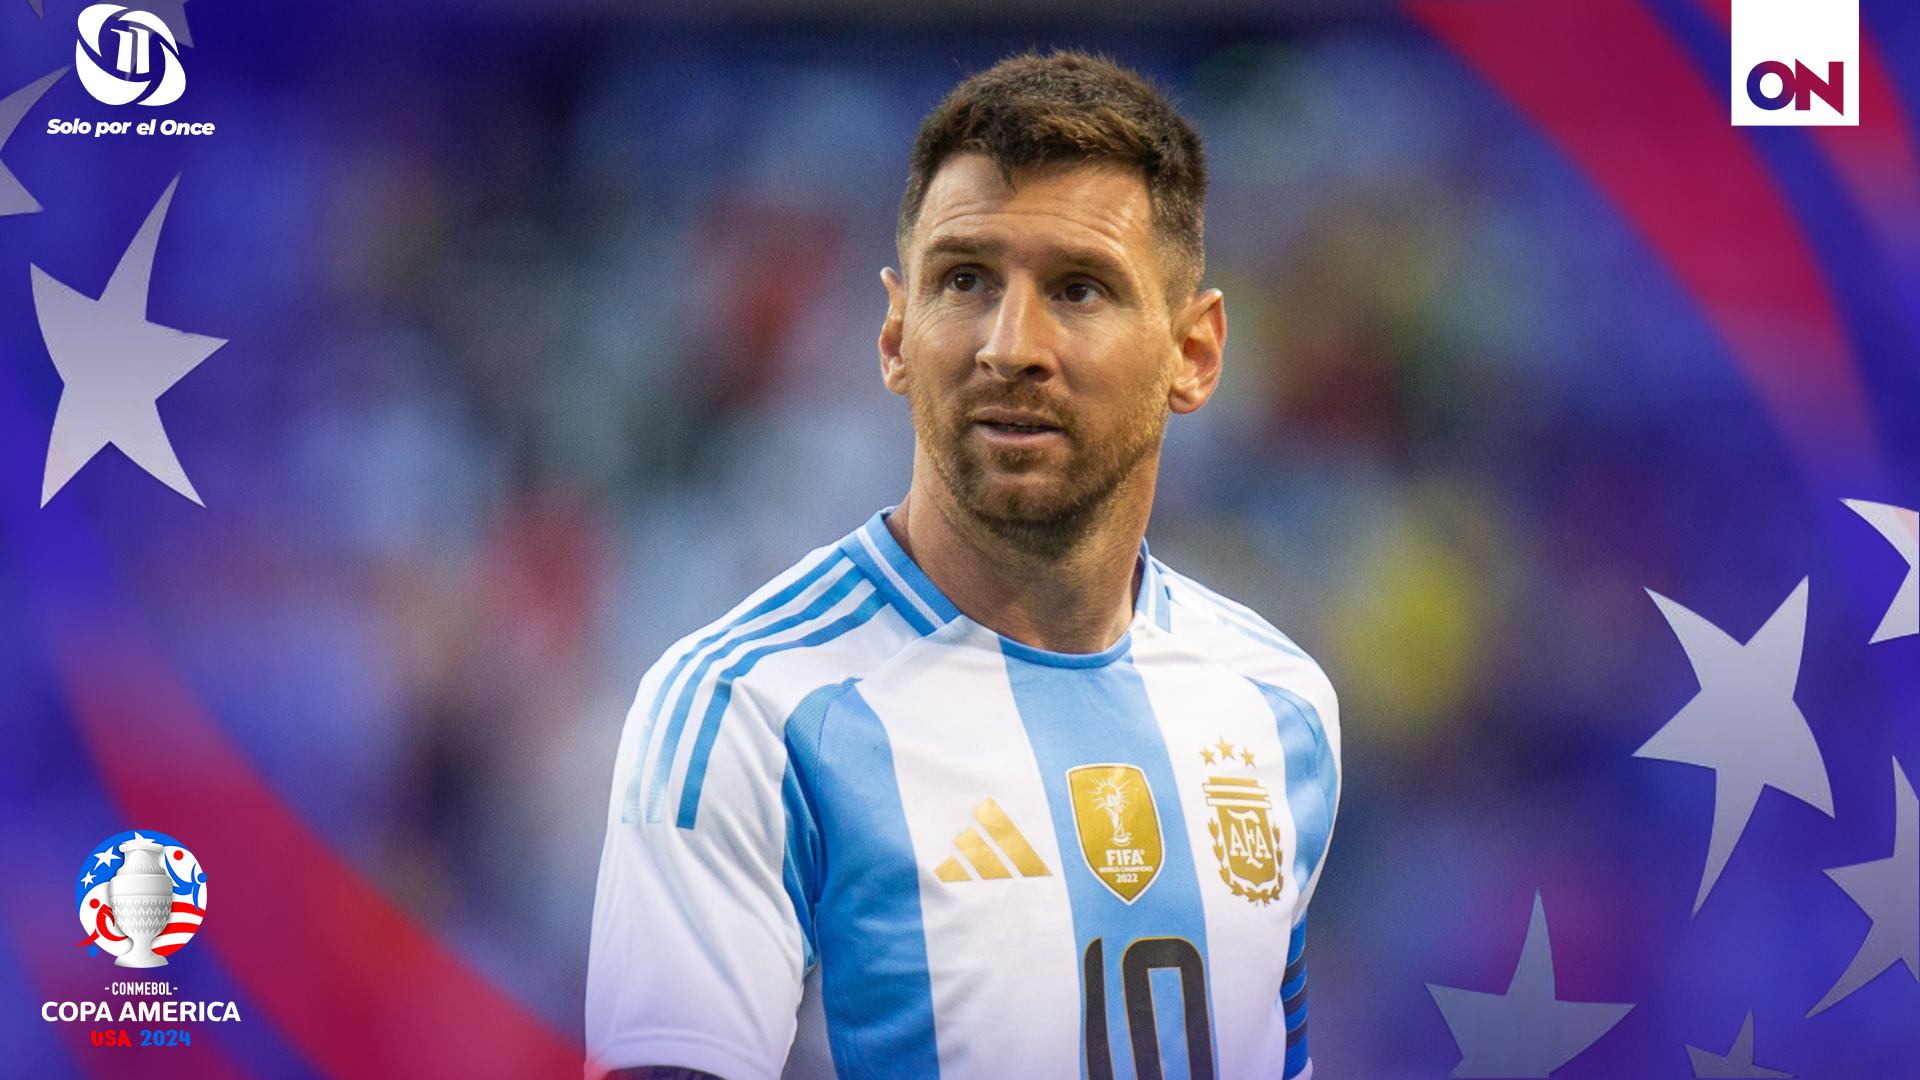 Recientes informes de medios internacionales han generado gran preocupación: Lionel Messi ha sufrido una distensión muscular.